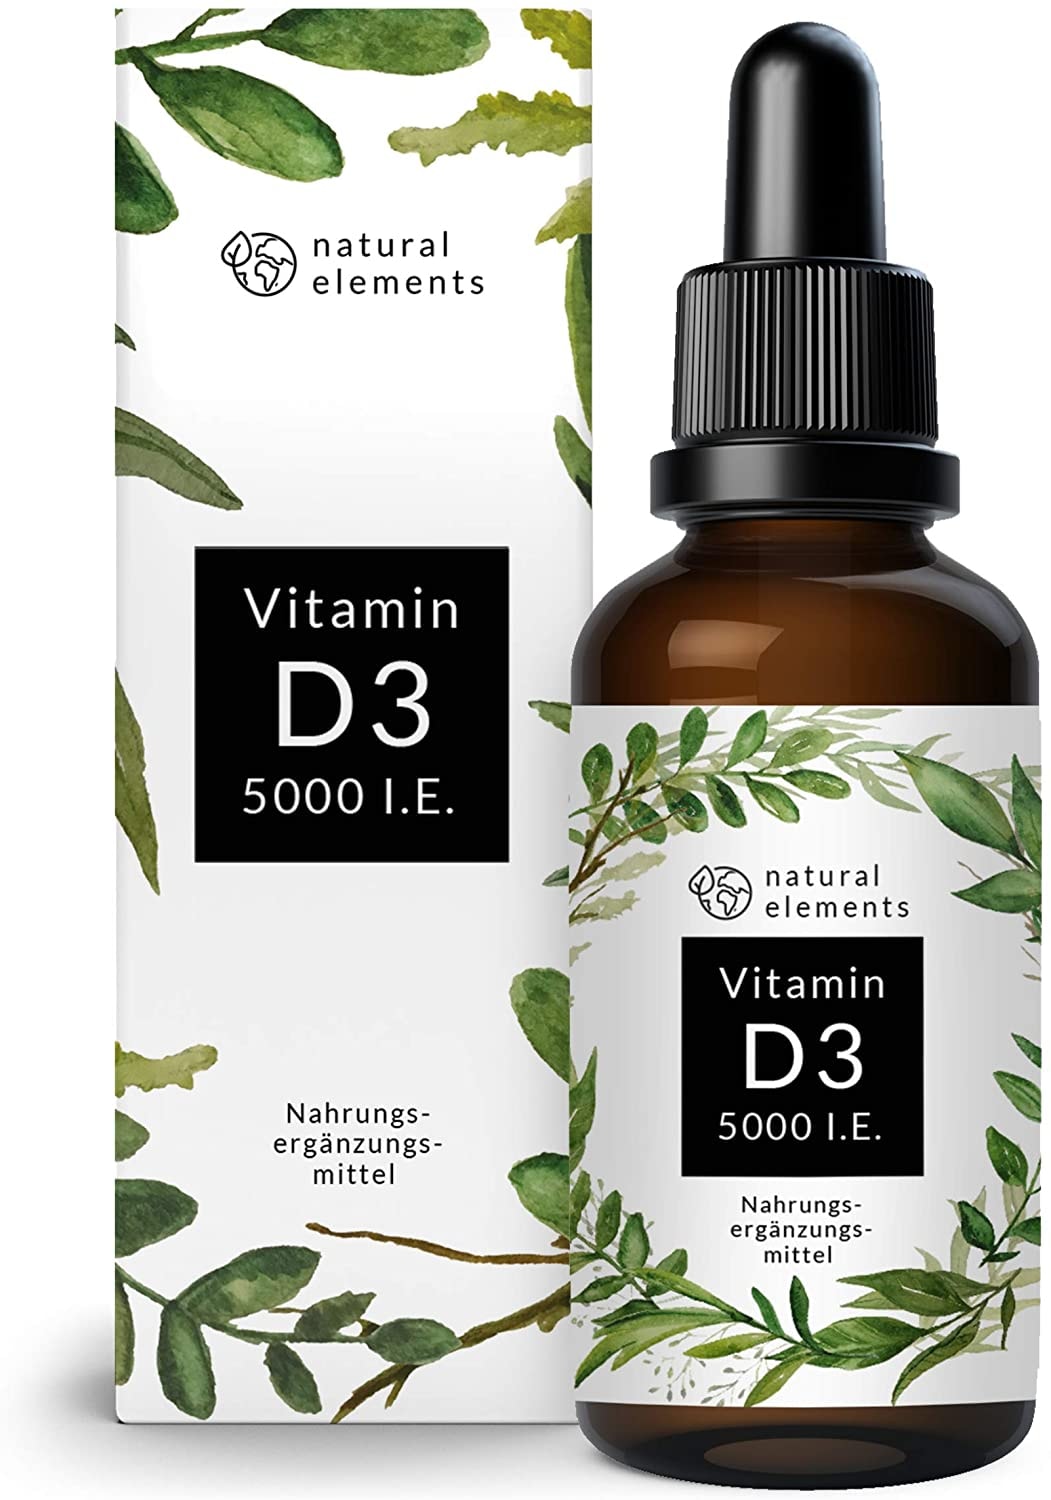 natural elements Vitamin D3 - Laborgeprüfte 5000 I.E. pro Tropfen - 50ml (1700 Tropfen) - Variante des mehrfachen Siegers 2019/2020* - In MCT-Öl aus Kokos - Hochdosiert, flüssig